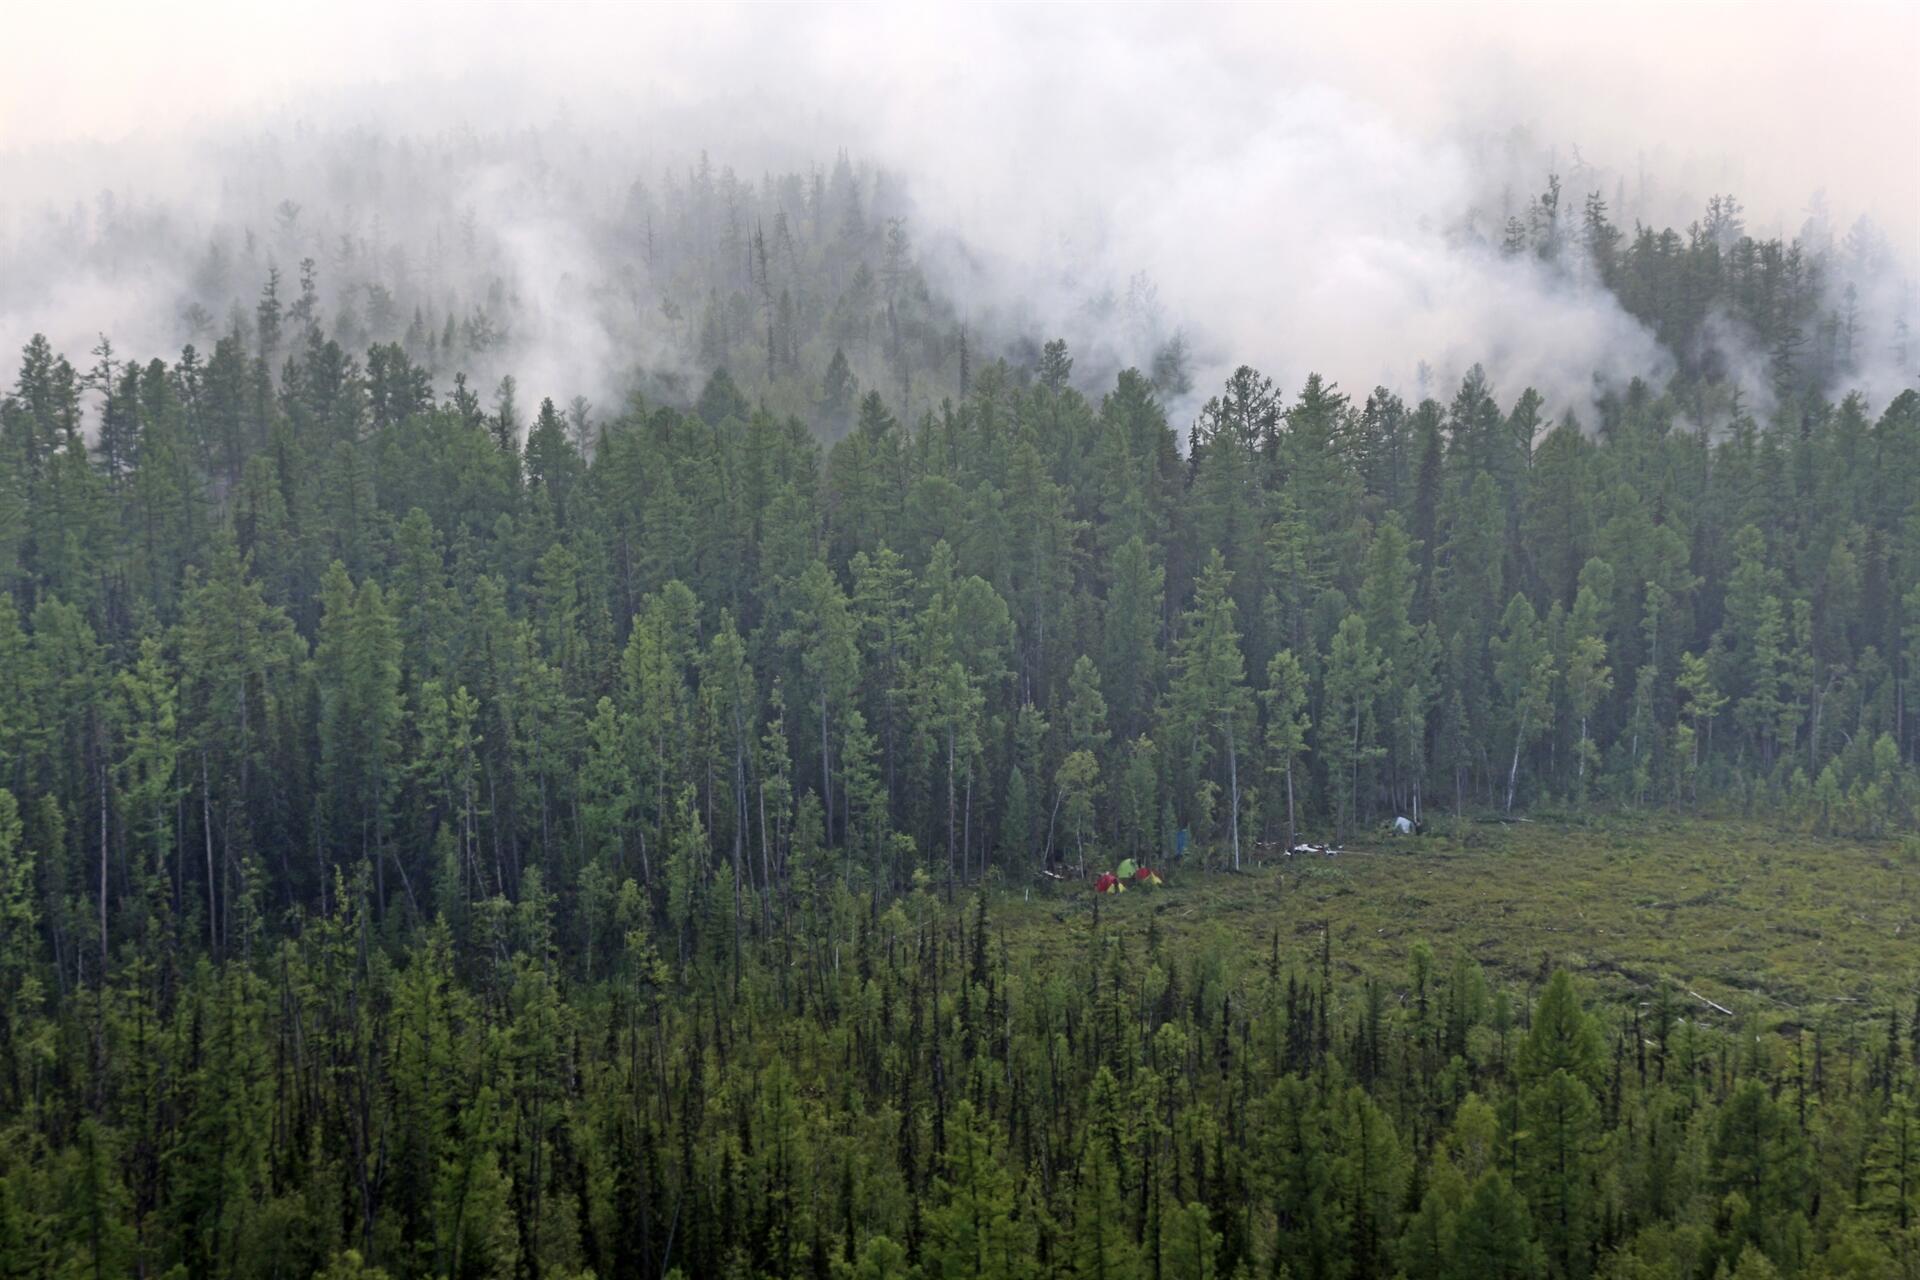 Orman Suçlarına Ait Davalar Mahkemelerce Acele Mevaddan Sayılır